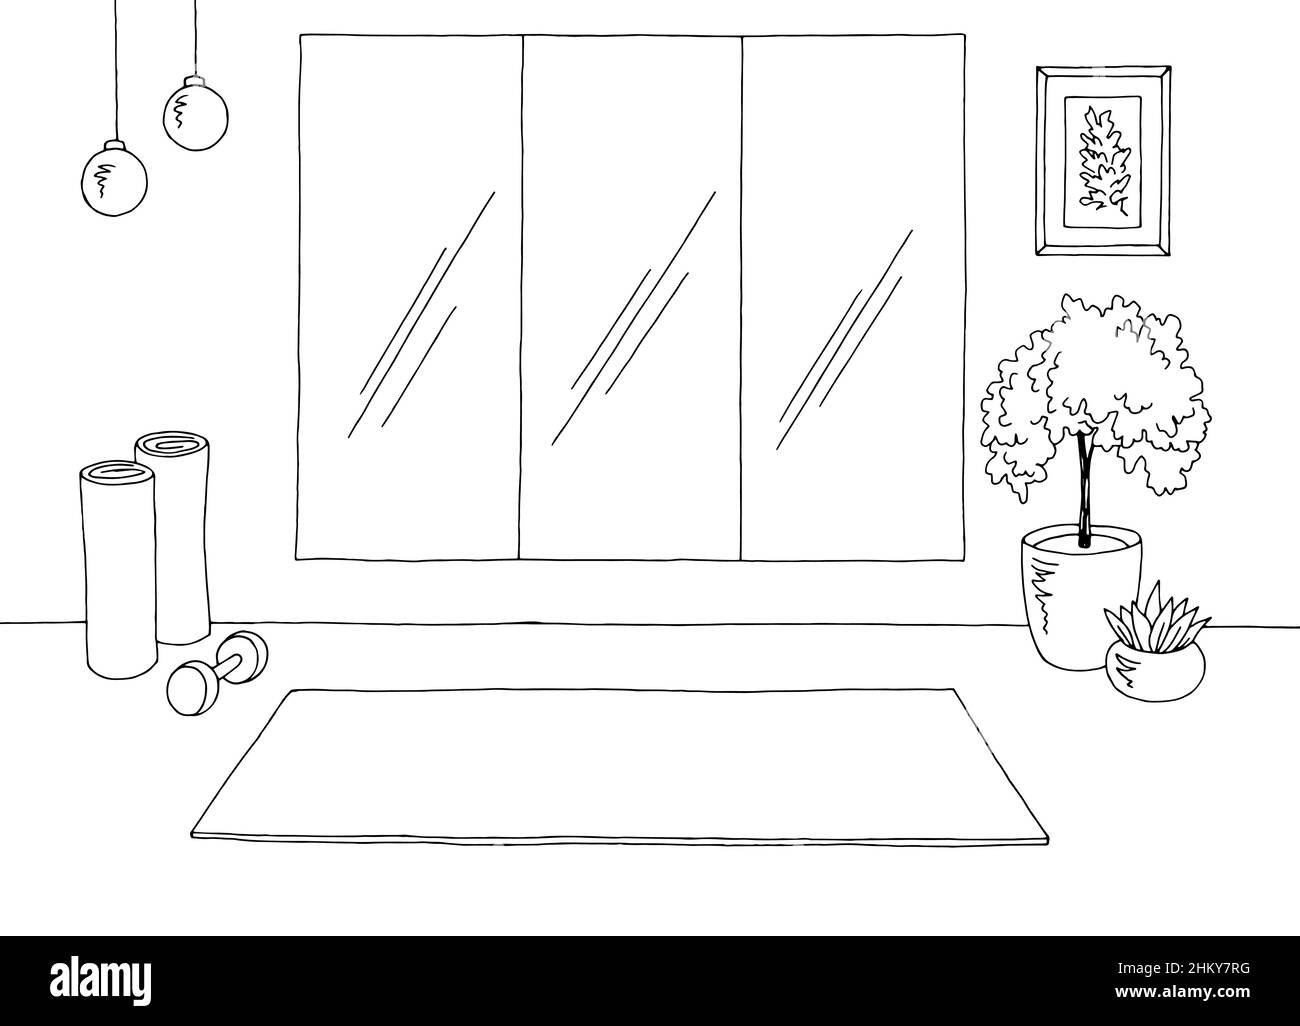 Grafik für die Innenausstattung des Yoga-Fitnessraums in Schwarz Weiß Skizze Illustration Vektor Stock Vektor